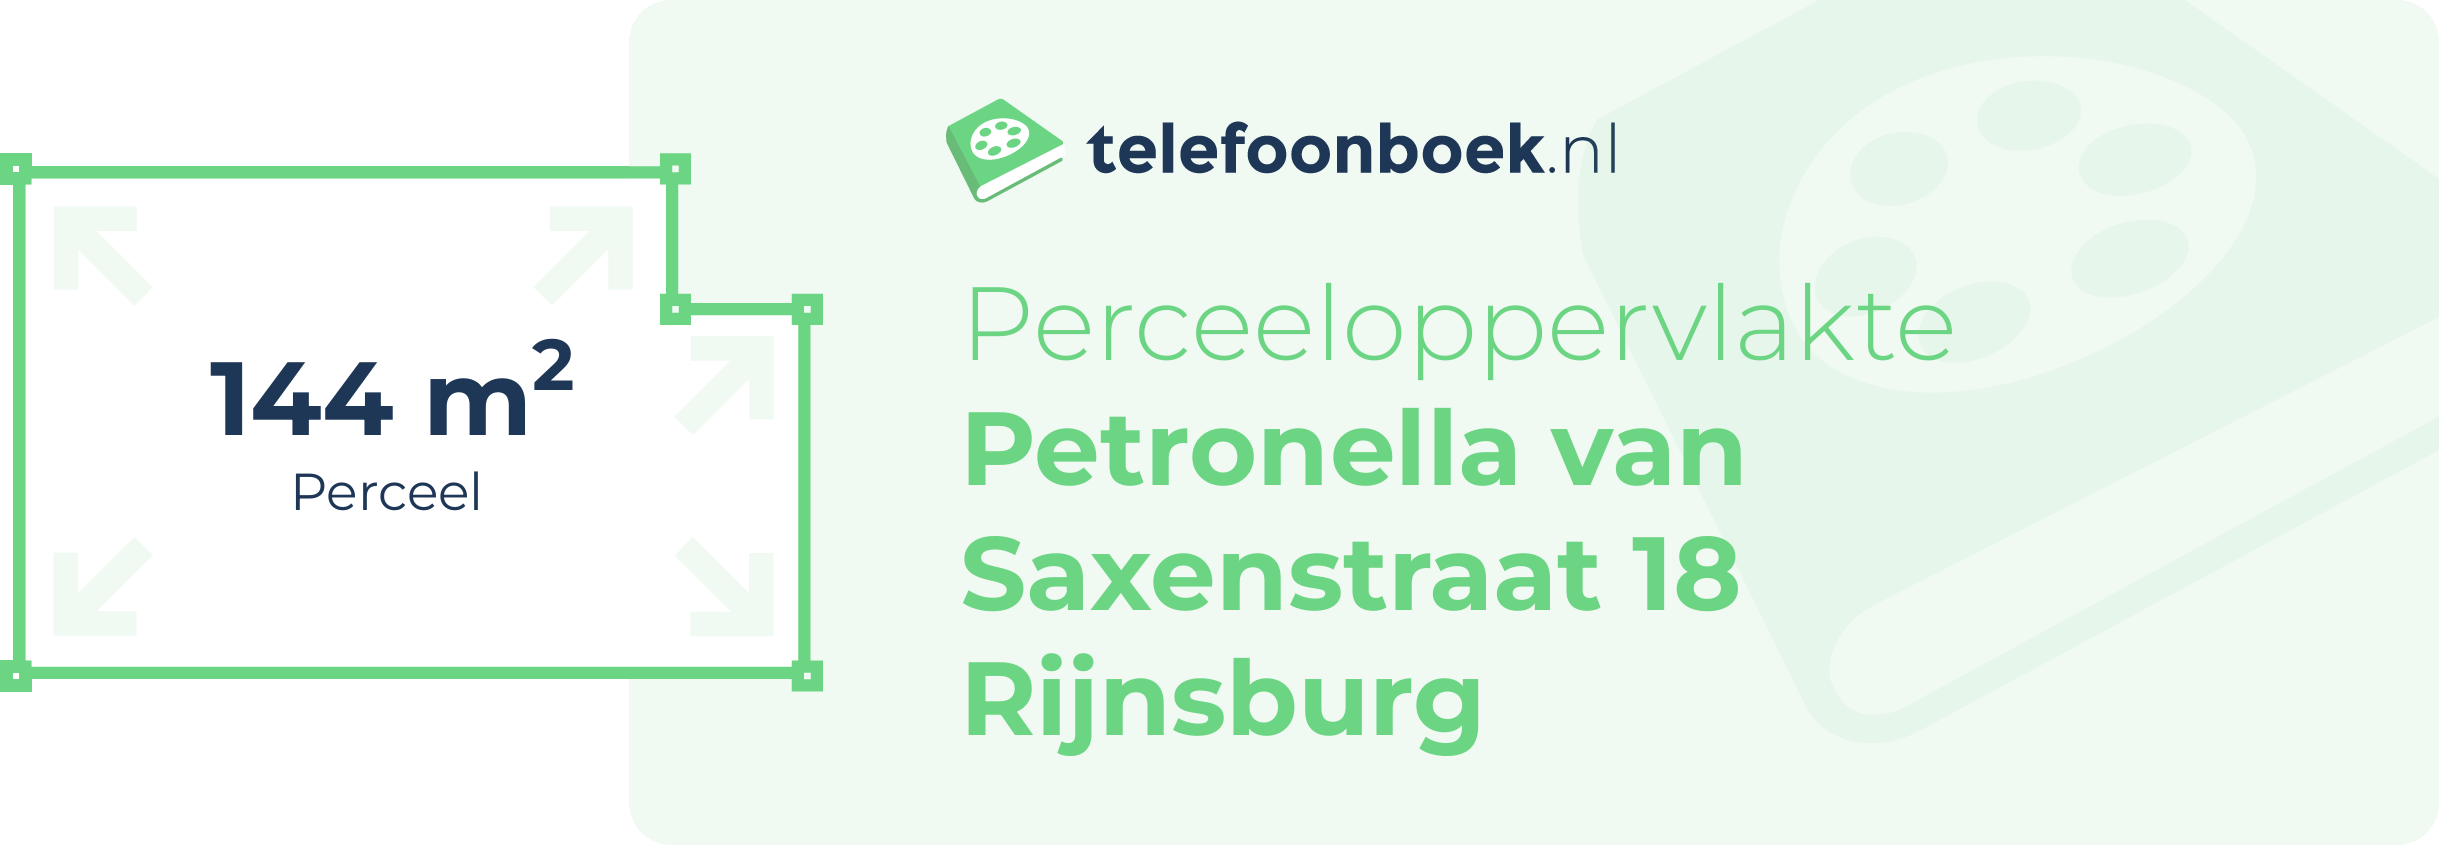 Perceeloppervlakte Petronella Van Saxenstraat 18 Rijnsburg